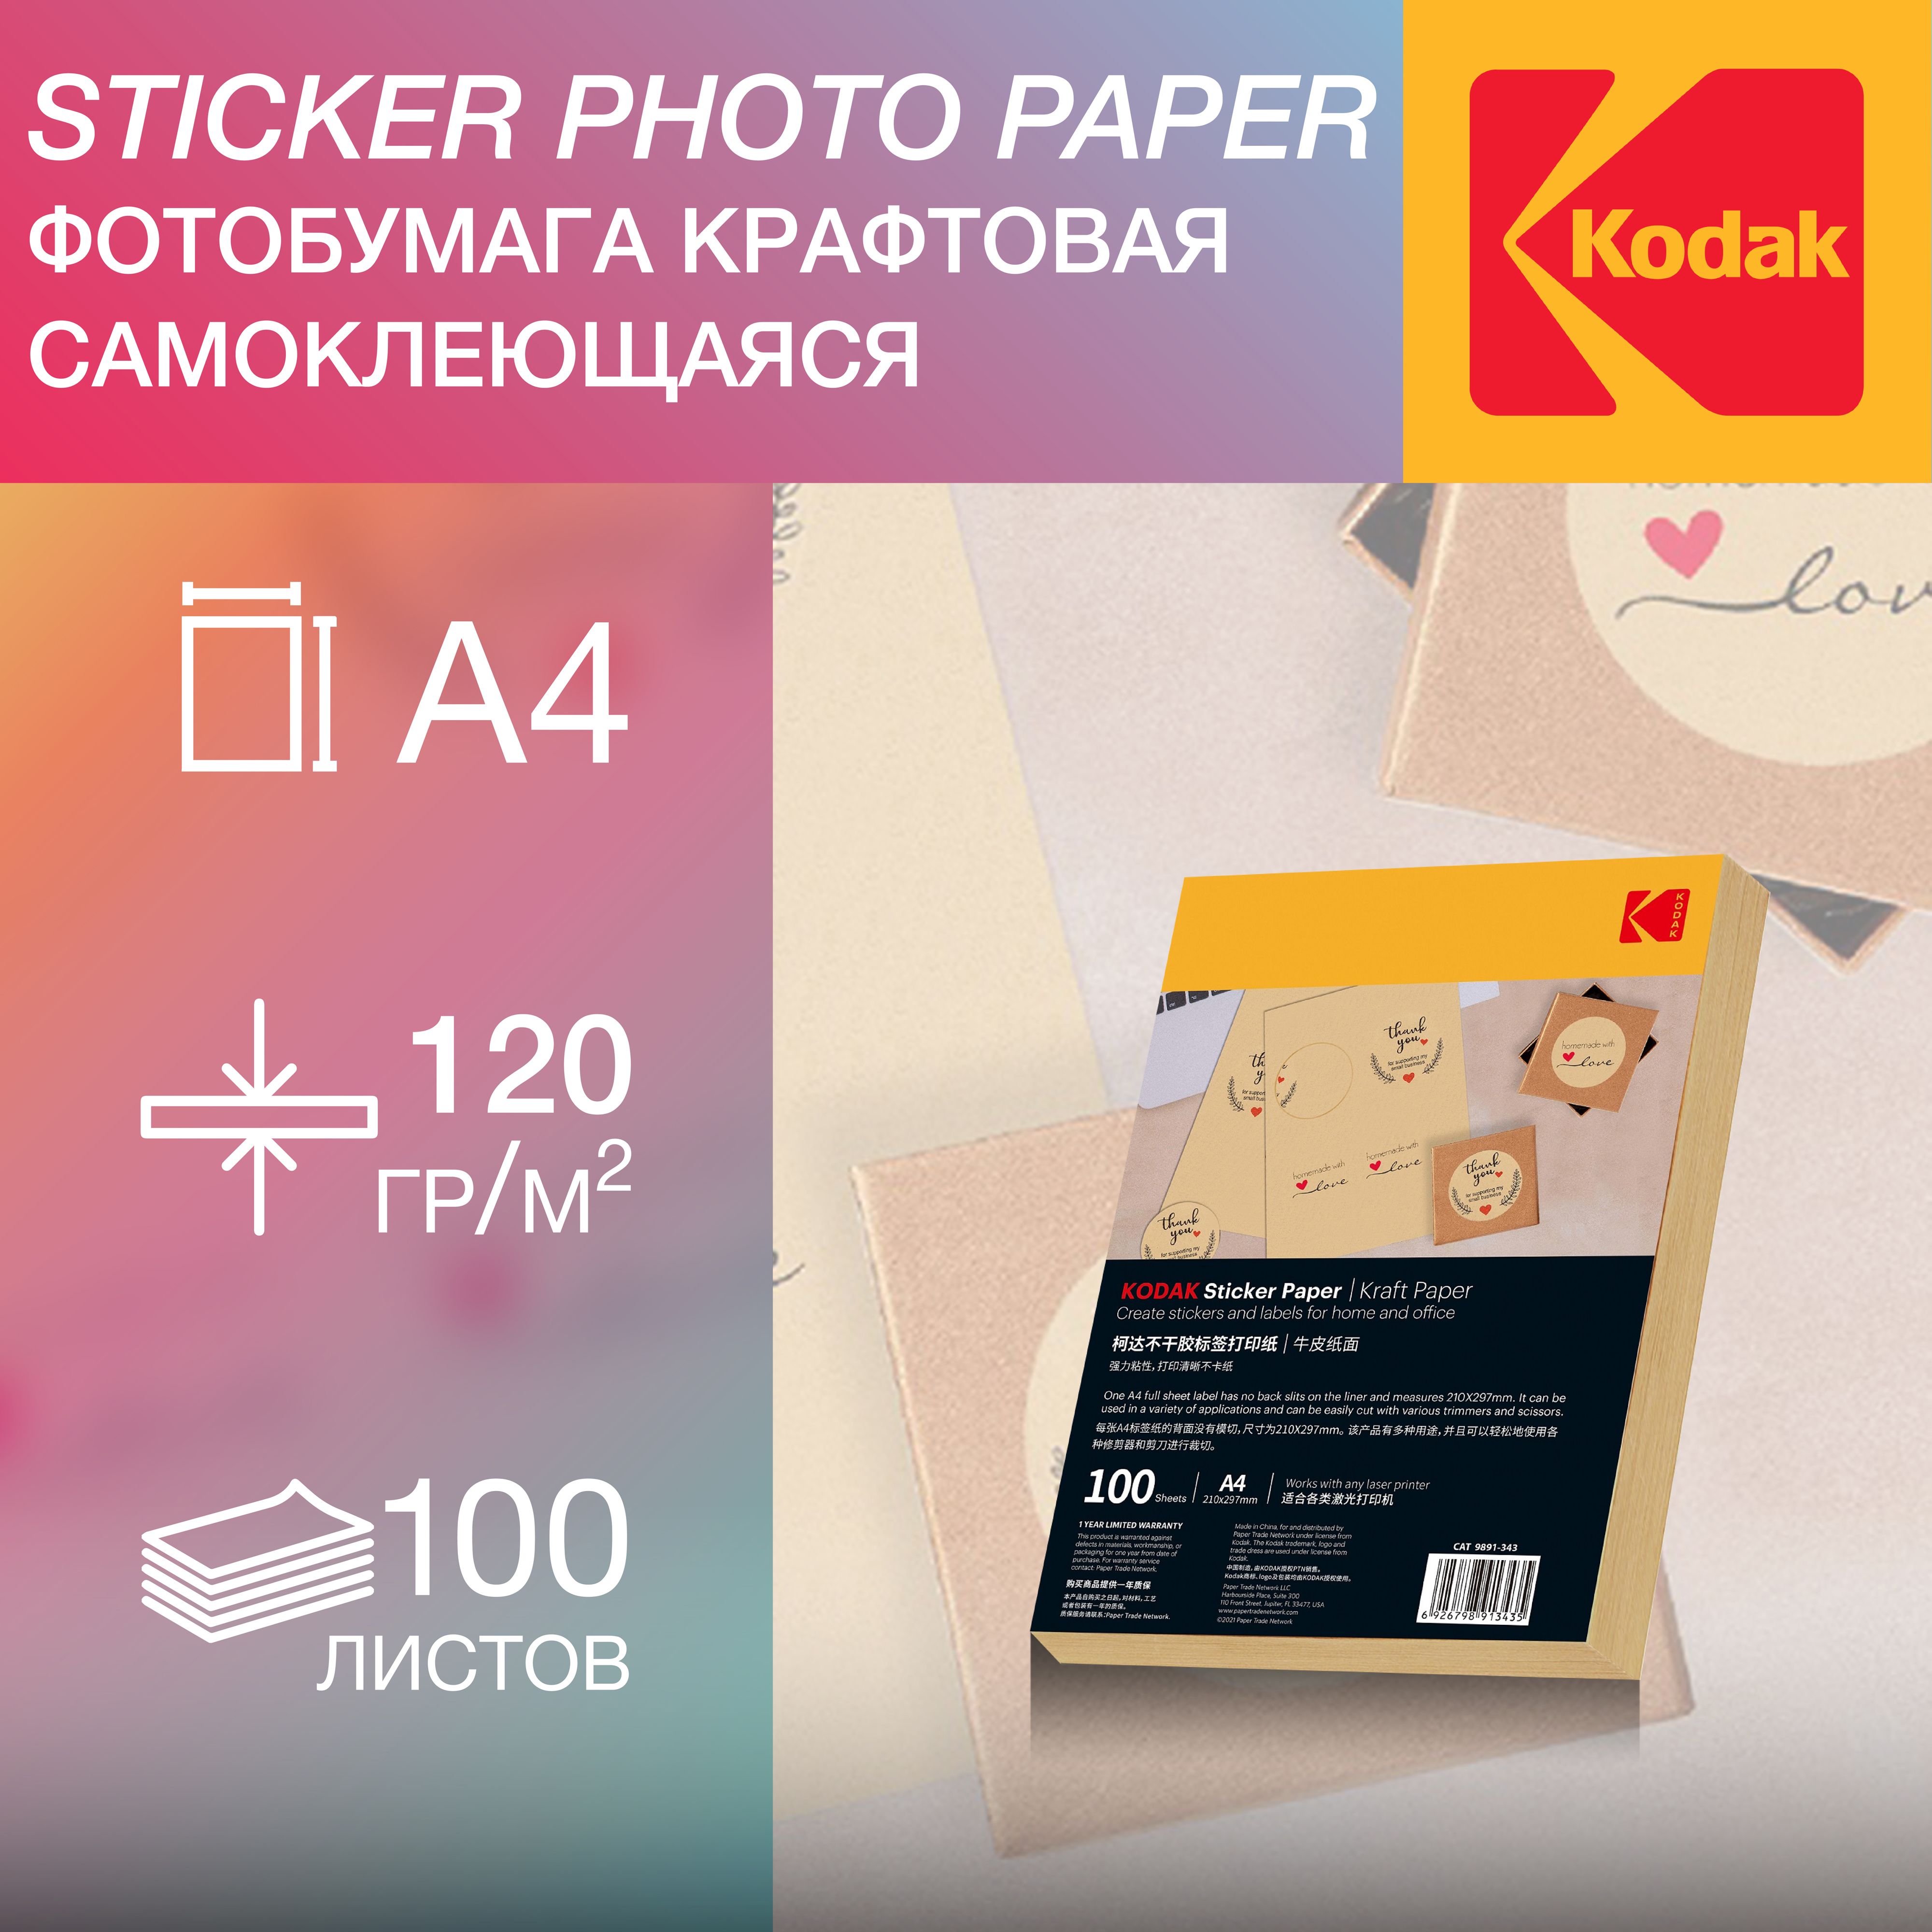 ФотобумагаА4,самоклеющаяся,100листов,120г/м2,длялазернойпечати,Kodak